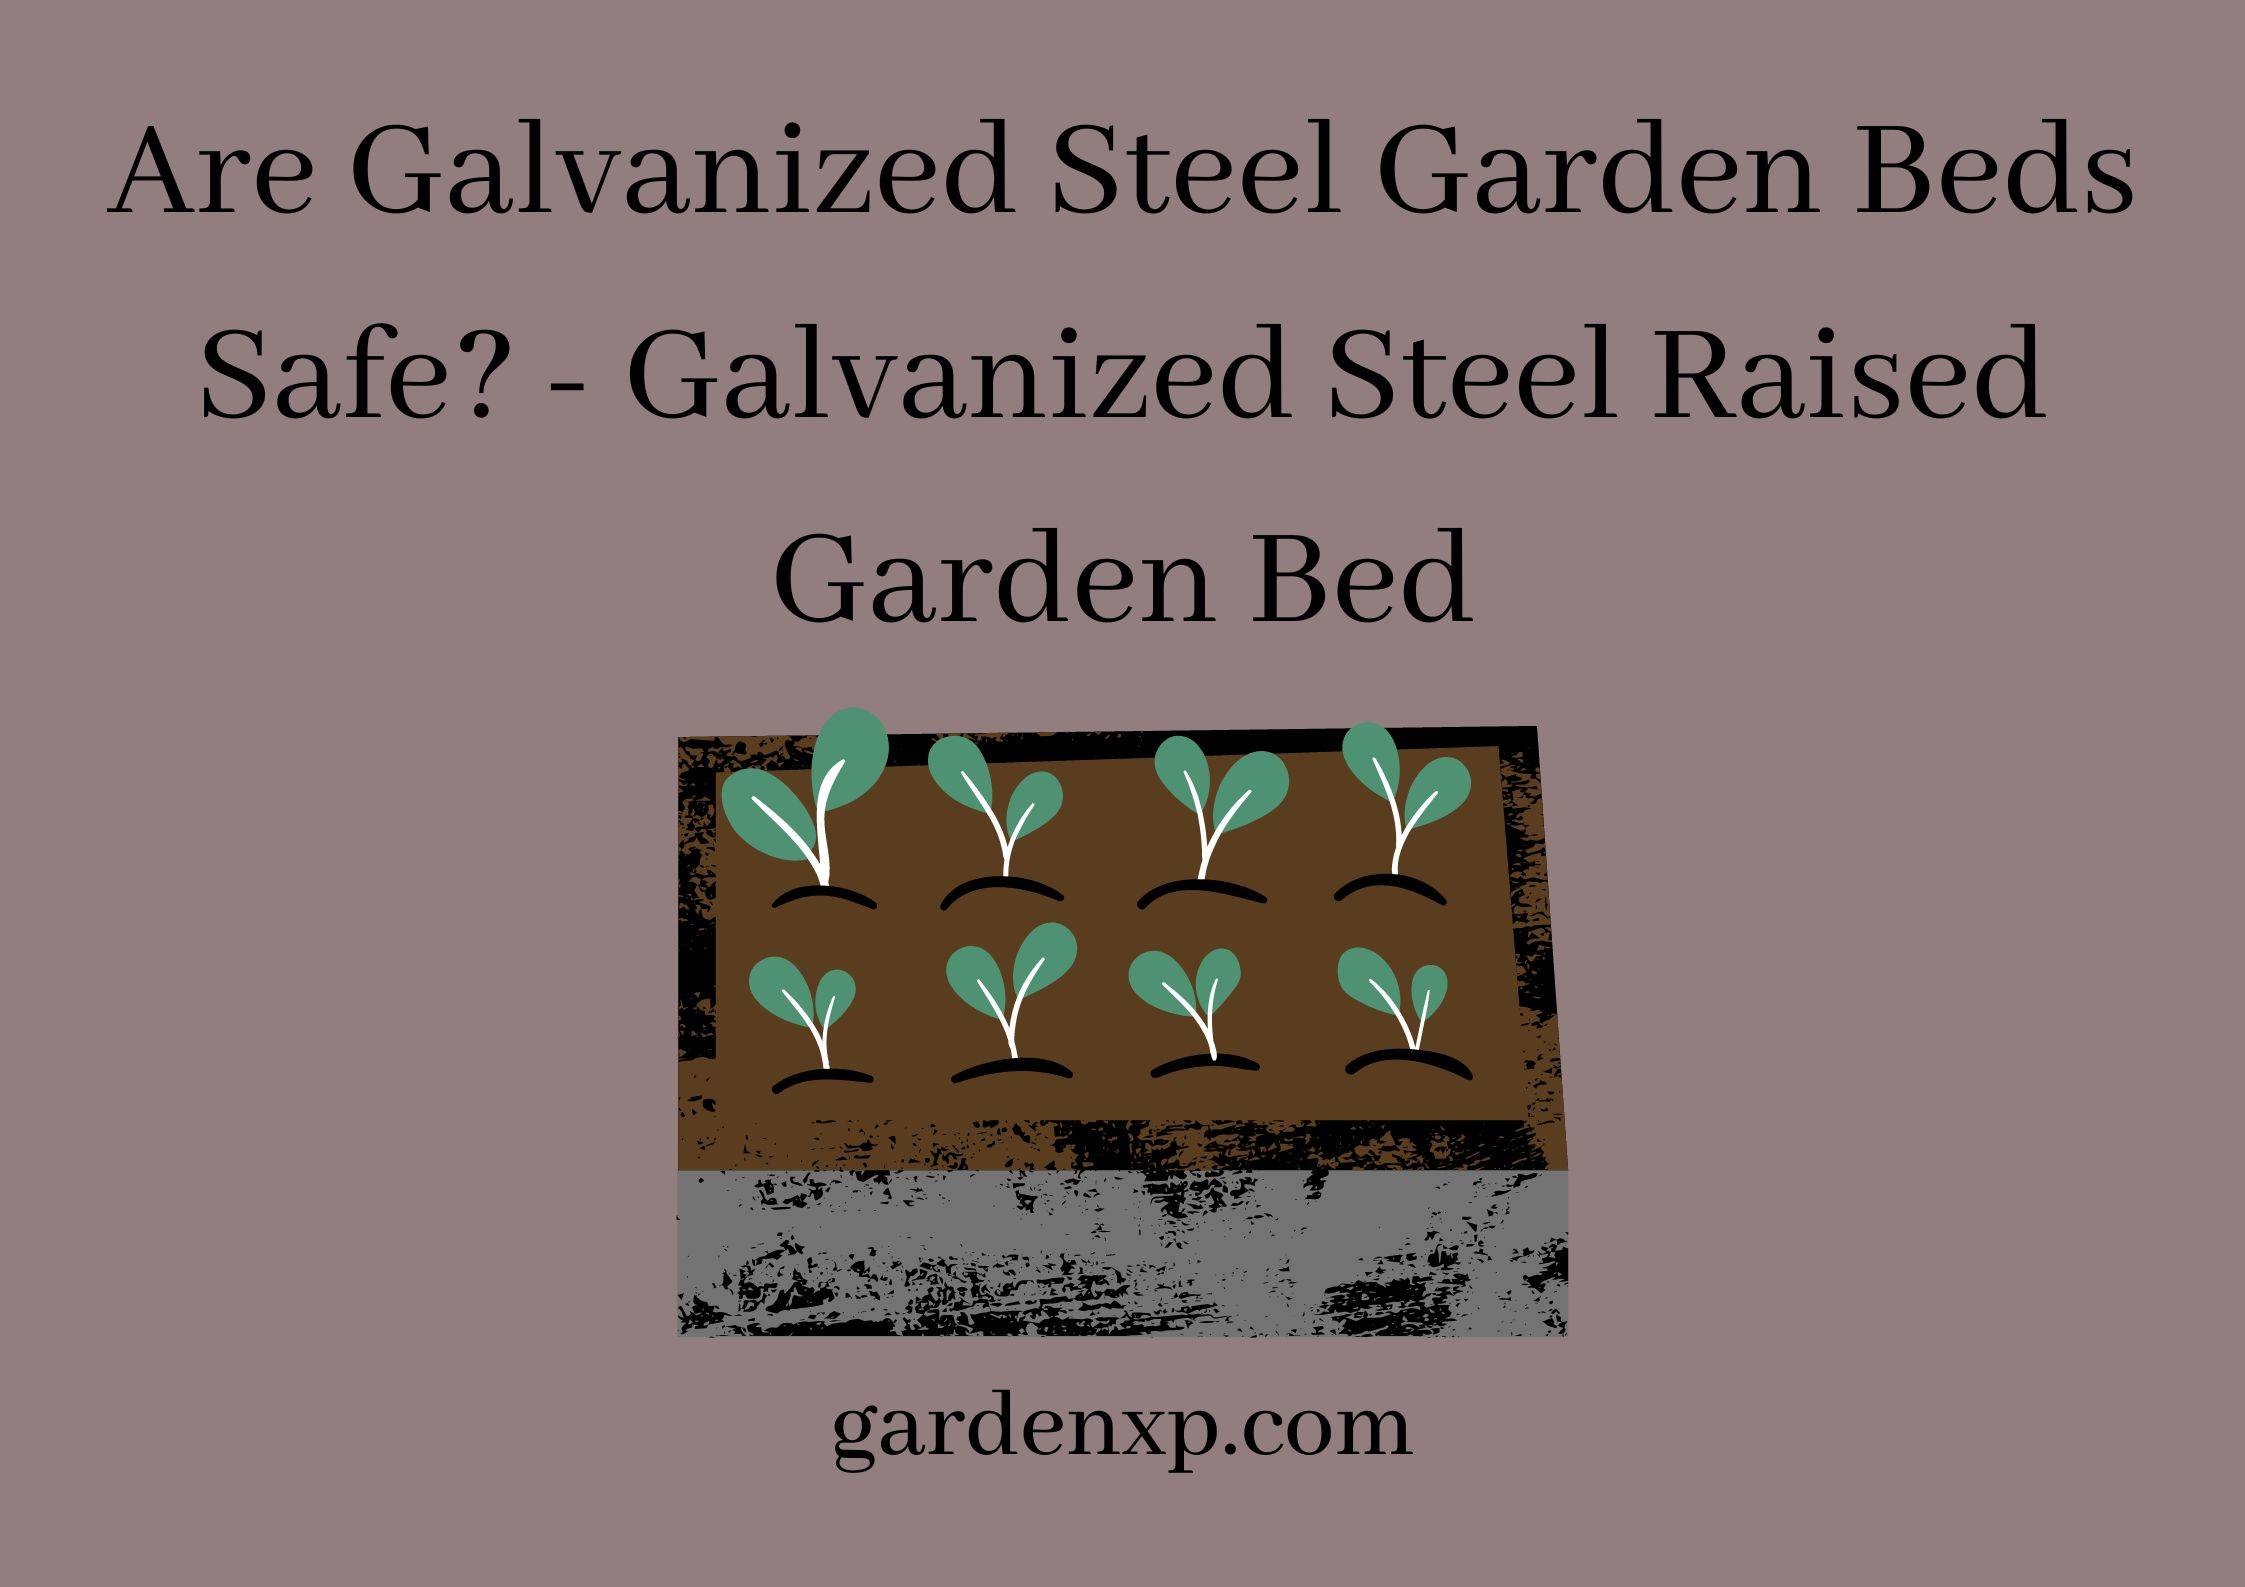 Are Galvanized Steel Garden Beds Safe? - Galvanized Steel Raised Garden Bed